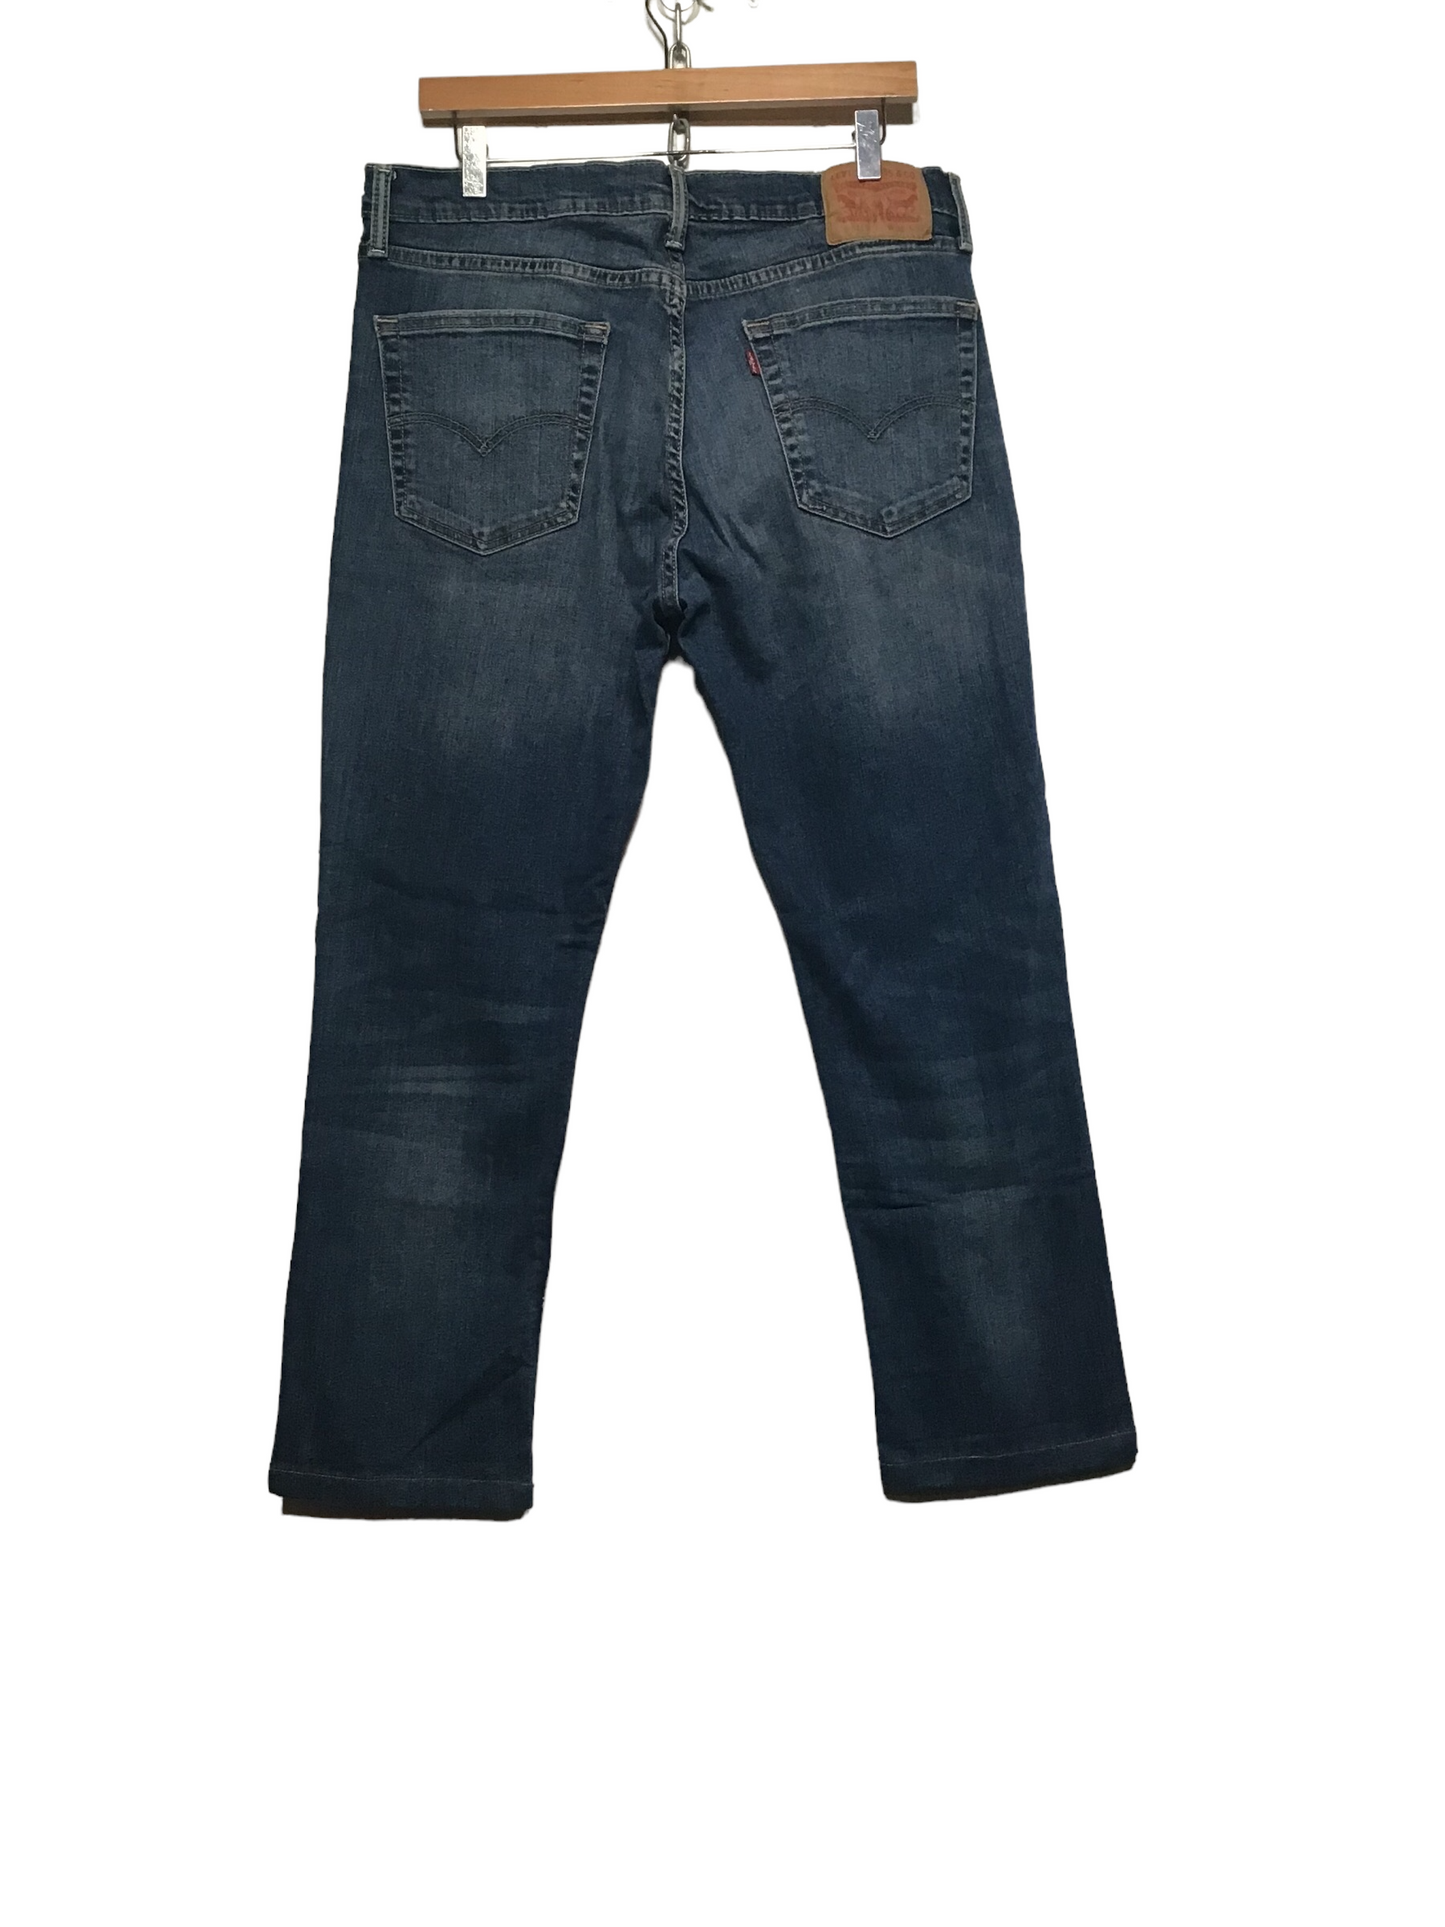 Levi 511 Jeans (36X32)